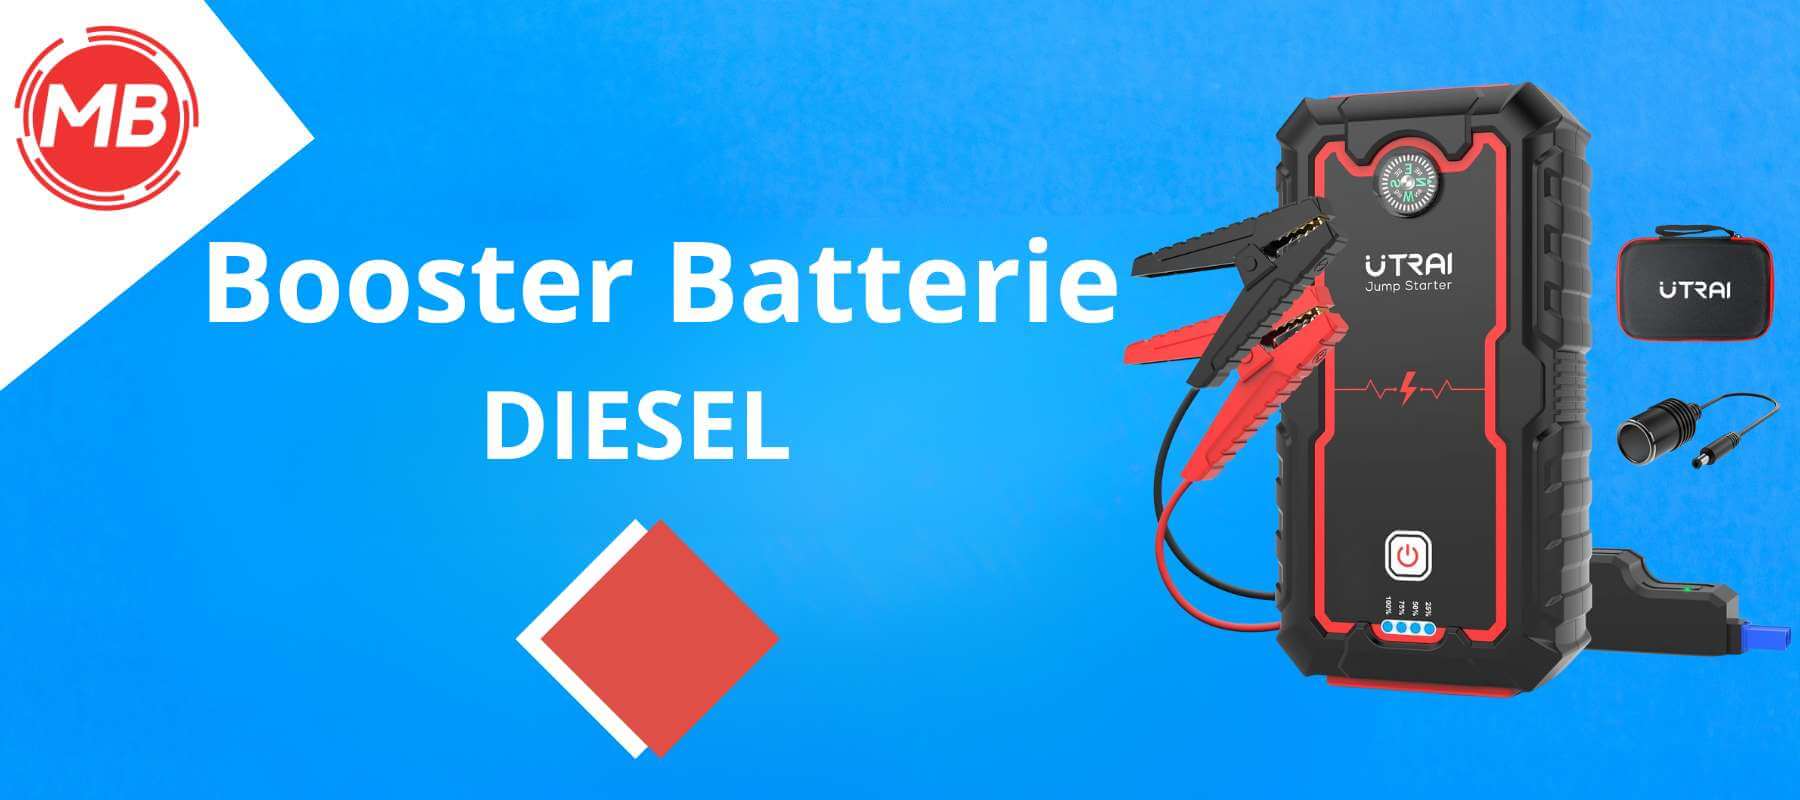 Guide complet pour choisir le meilleur Booster Batterie Diesel